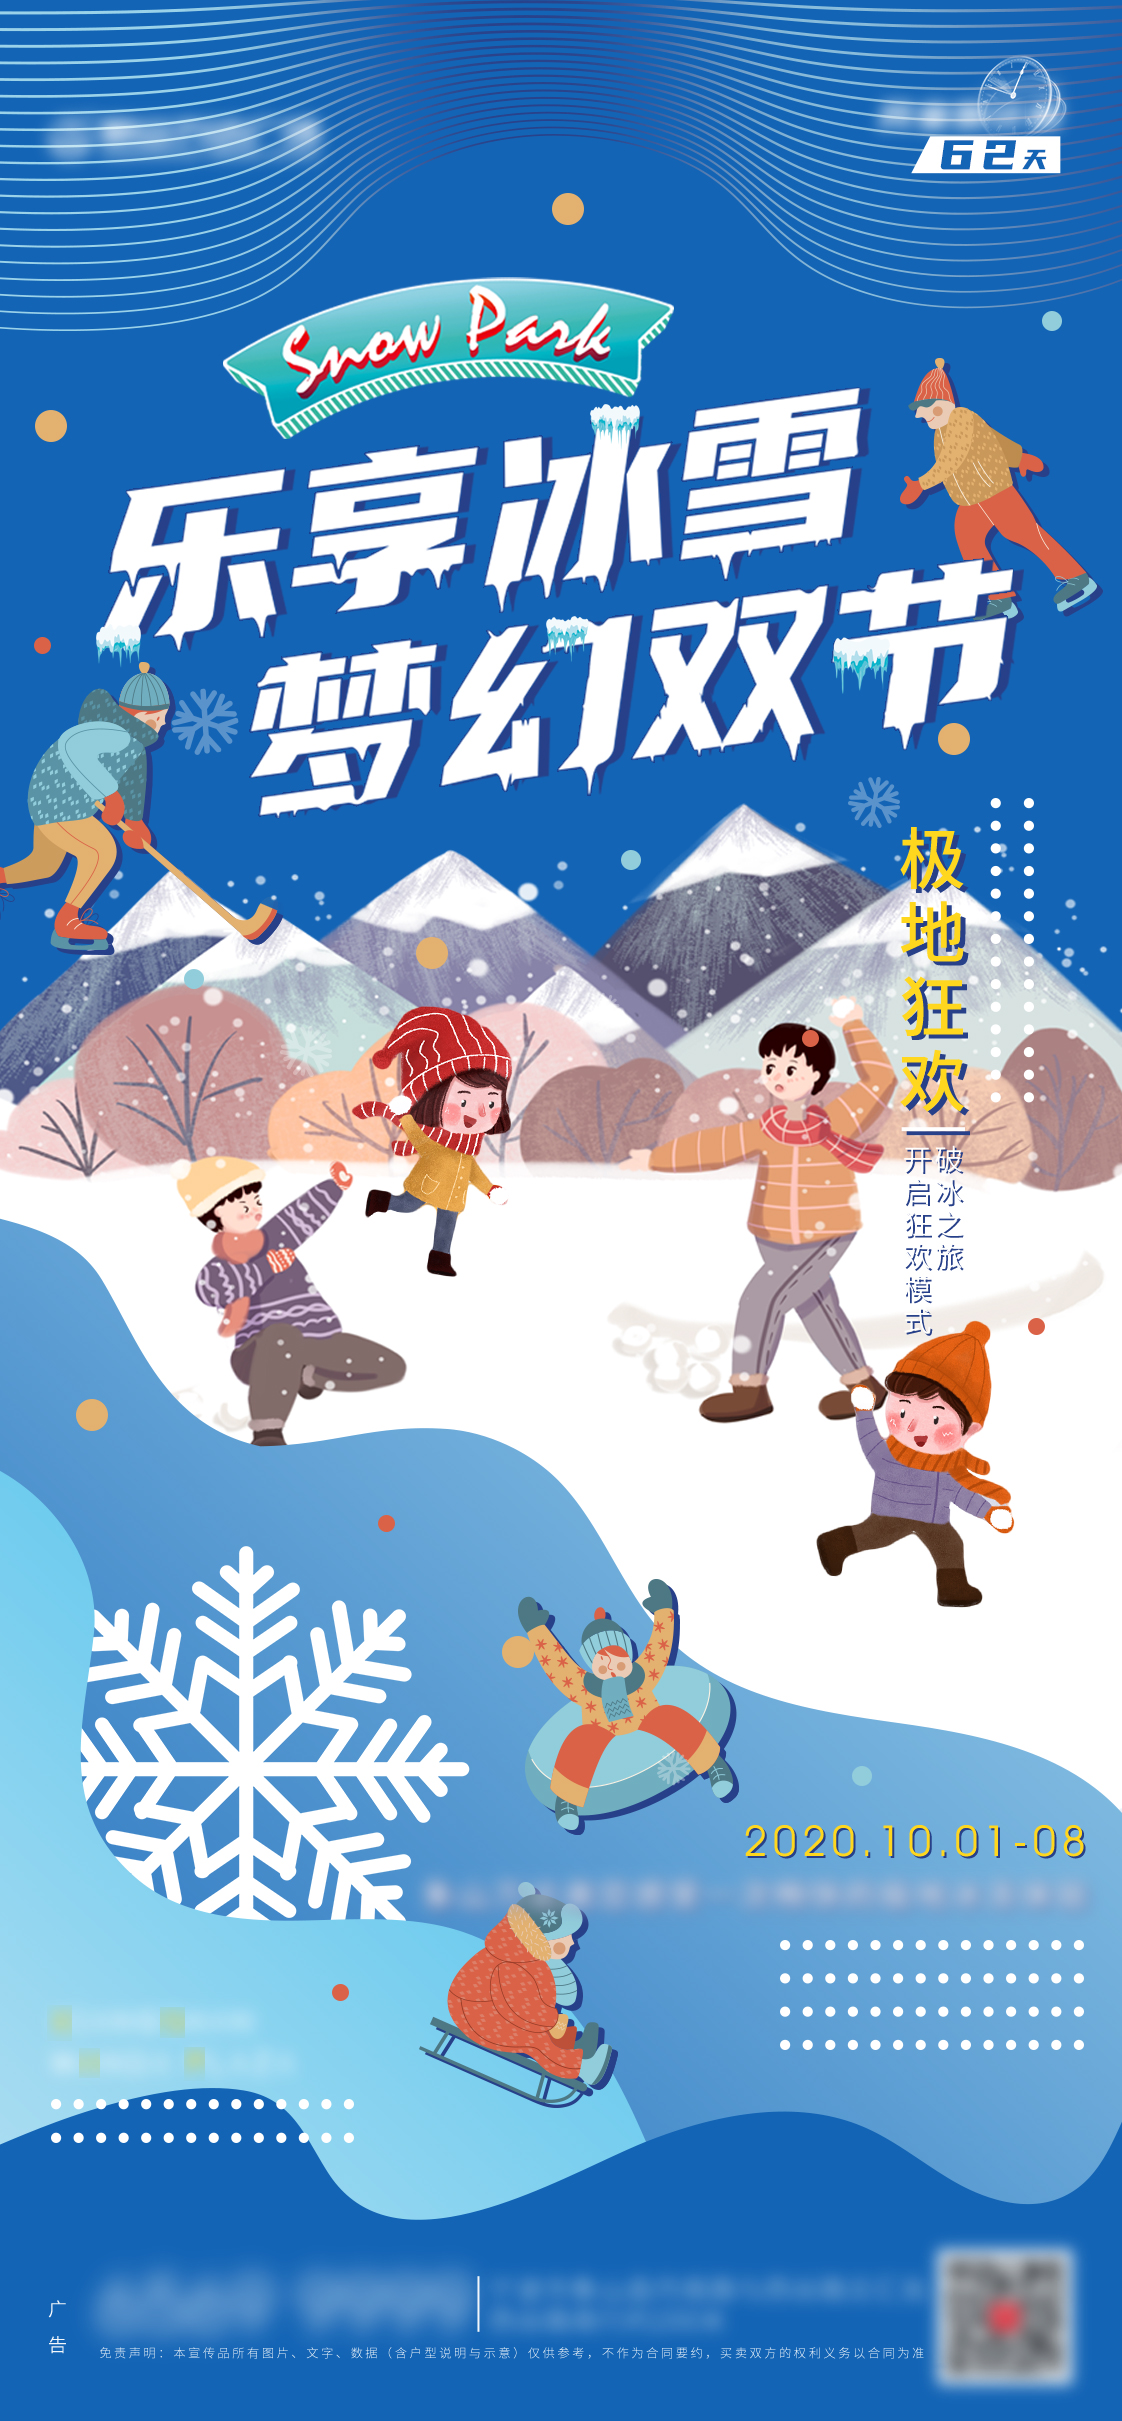 校园冰雪文化节海报图片